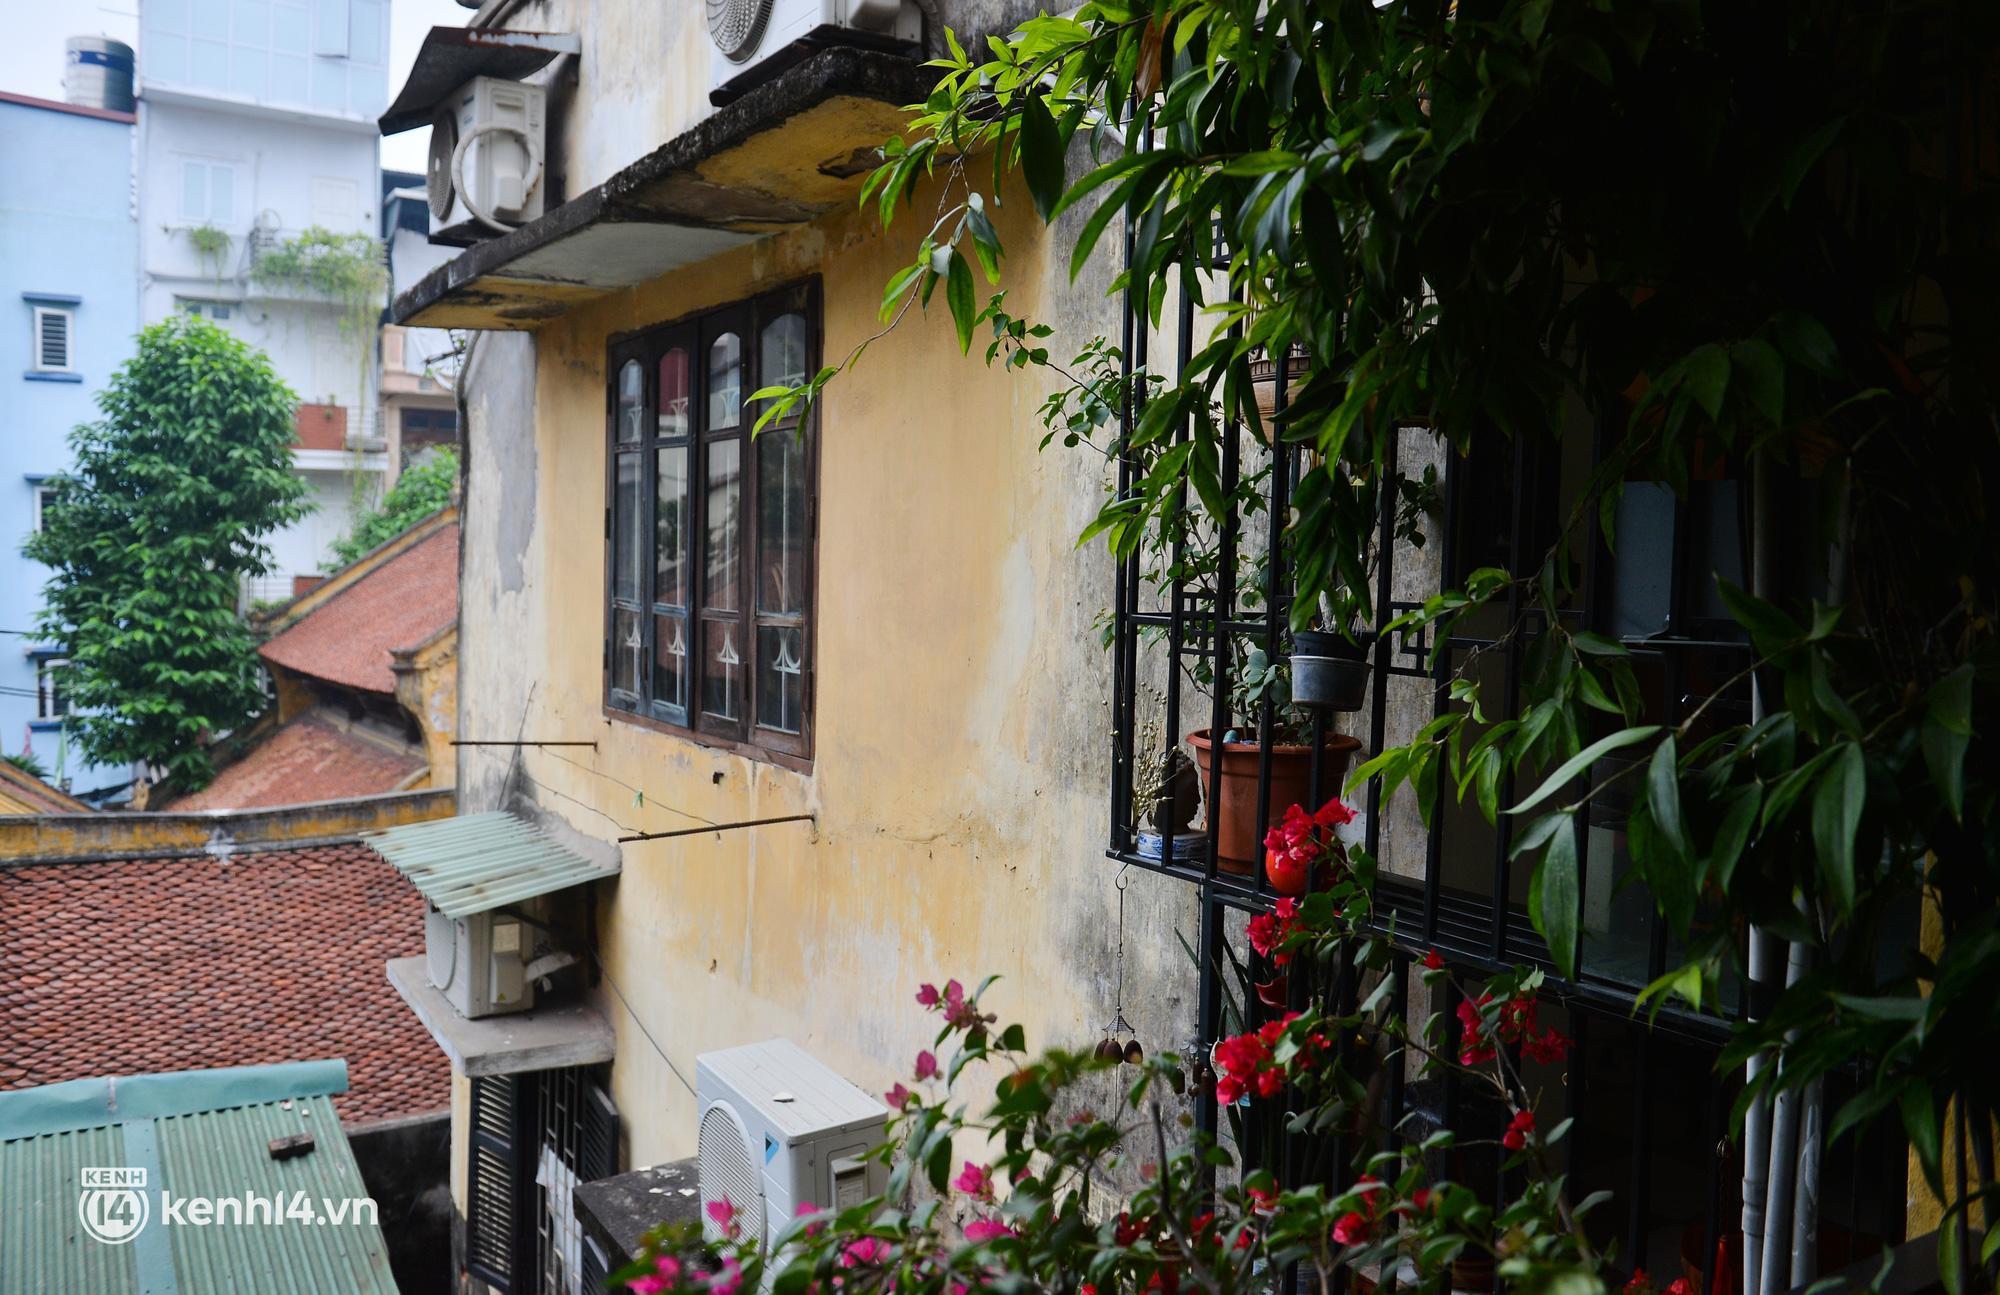 Người phụ nữ rao bán căn nhà tập thể cũ ở Hà Nội giá 8,5 tỷ đồng: Tôi suy sụp đến mất ngủ khi bị dân mạng chỉ trích - Ảnh 4.